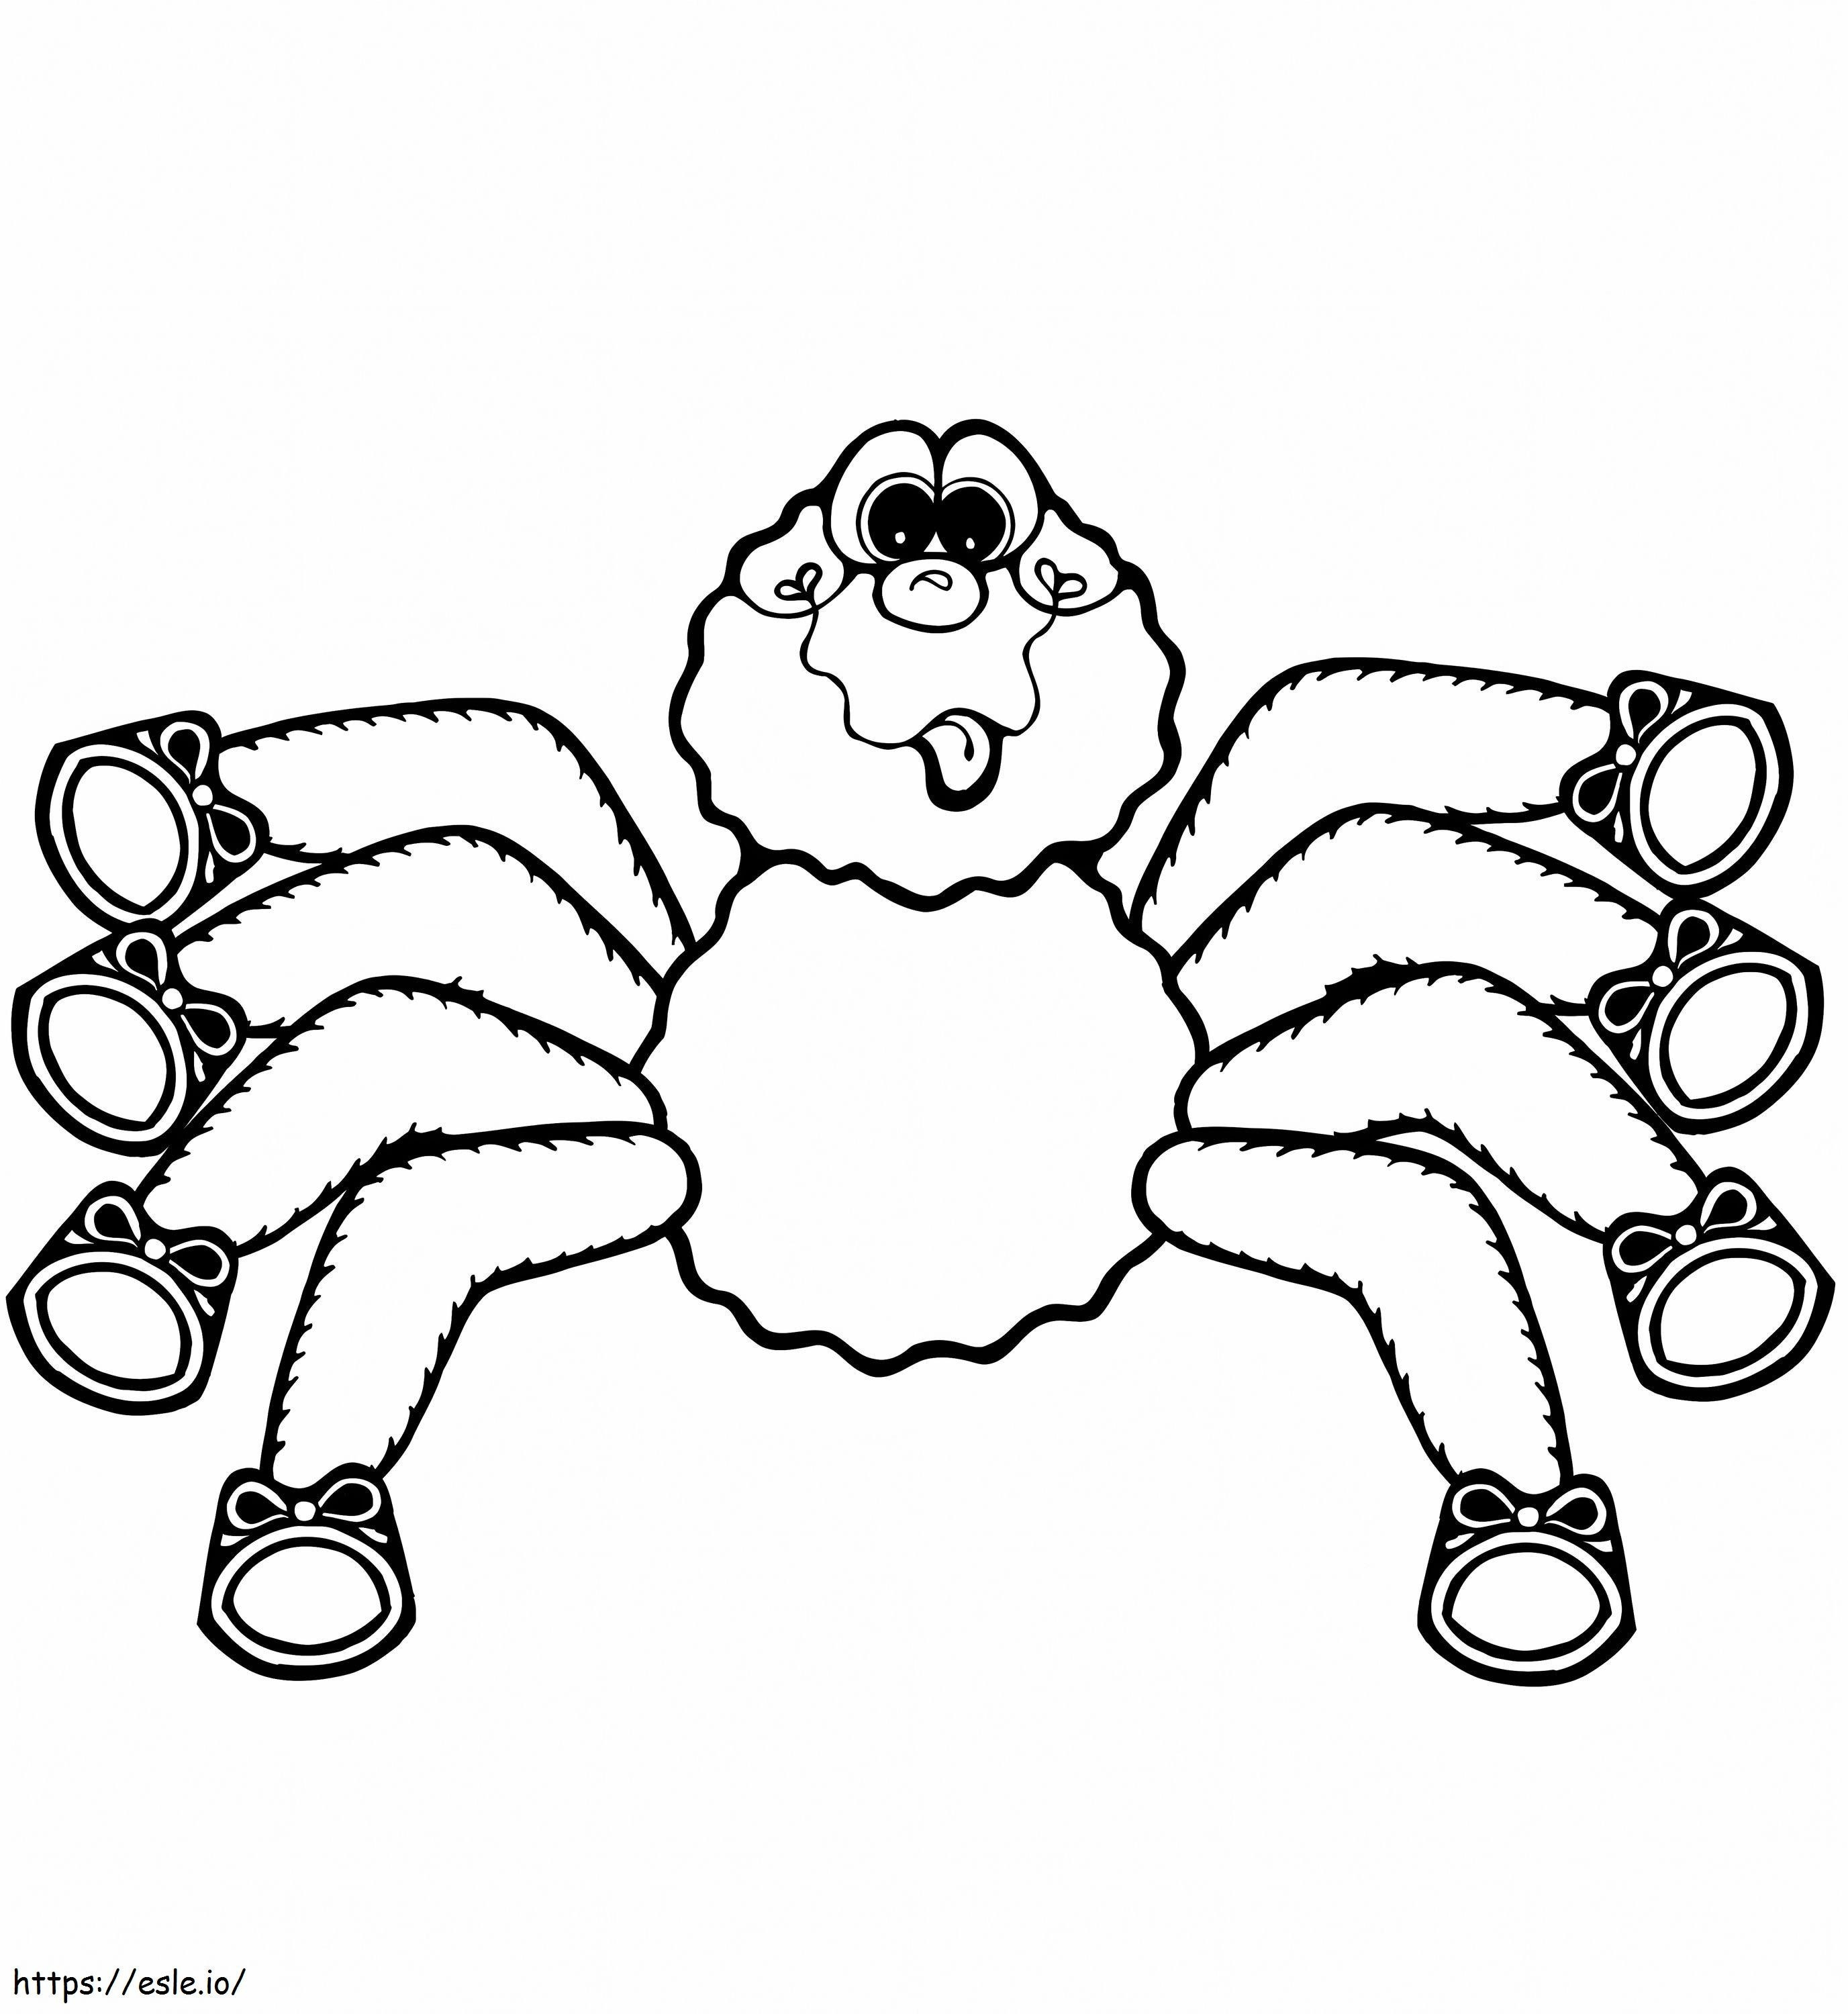 1545184994 Aranha de desenho animado 1 para colorir